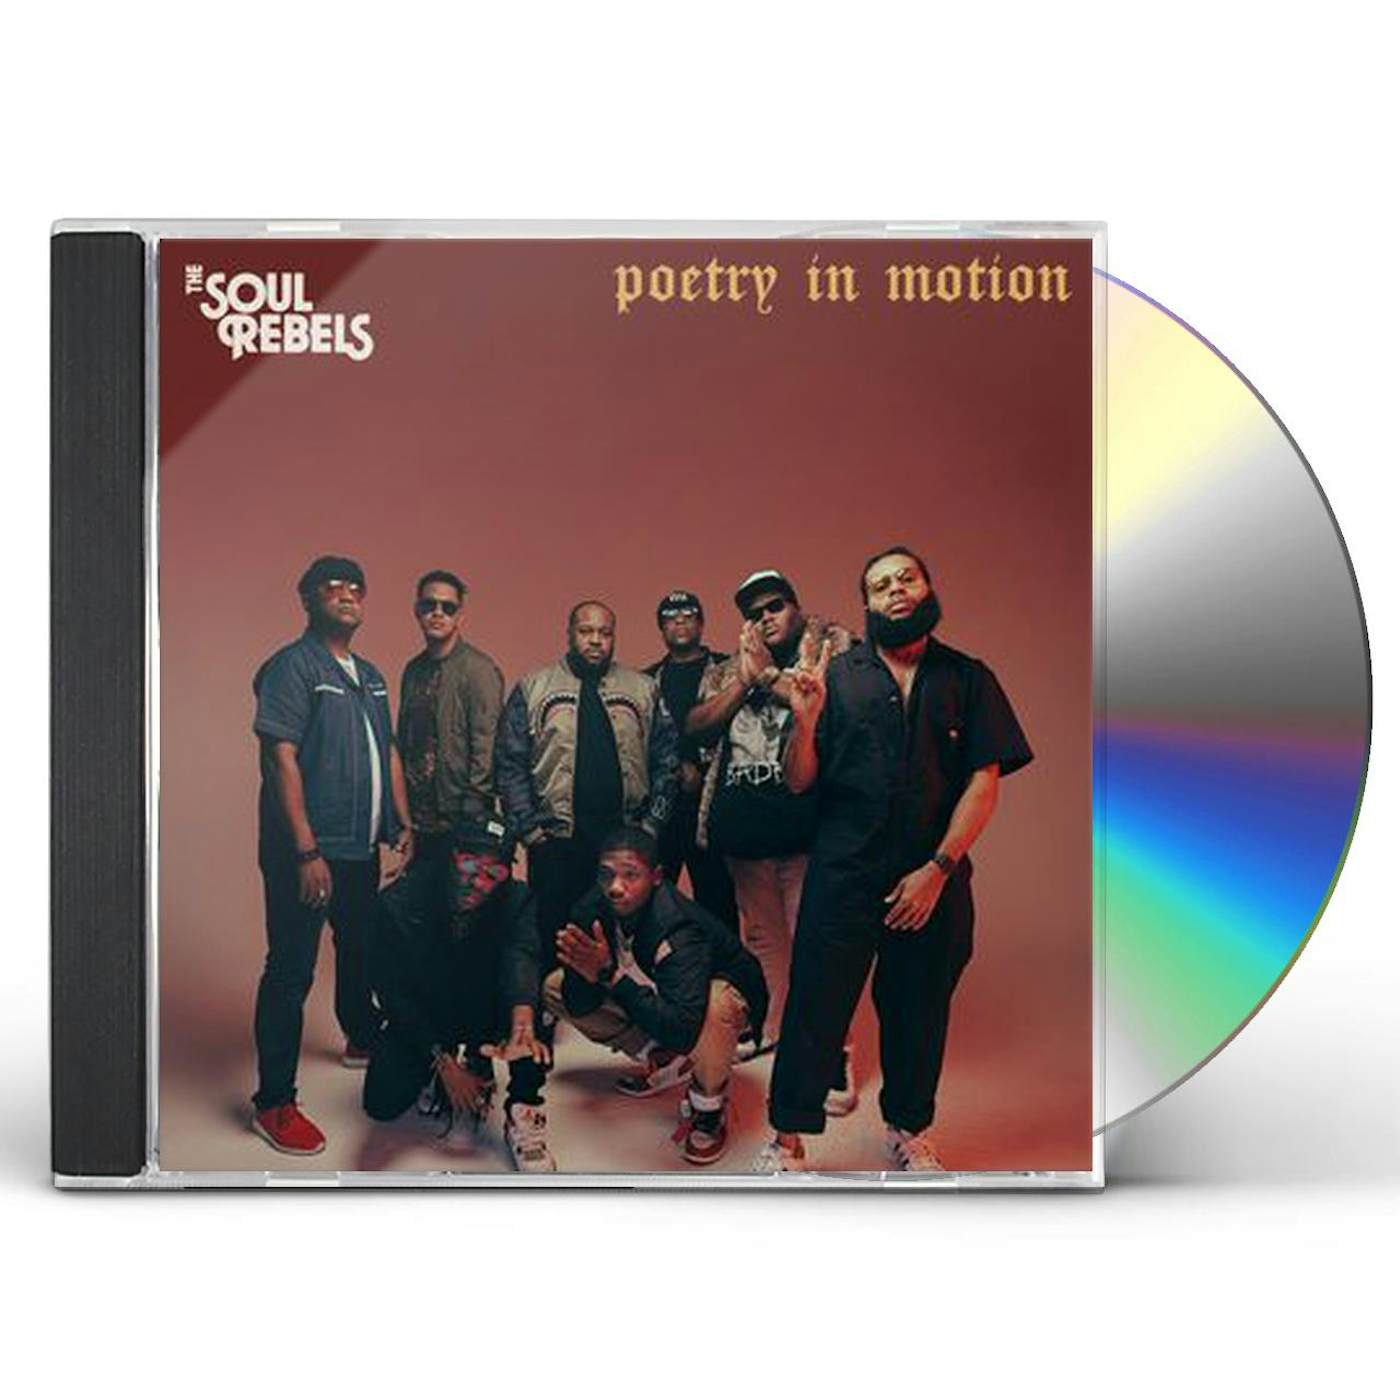 Soul Rebels POETRY IN MOTION CD